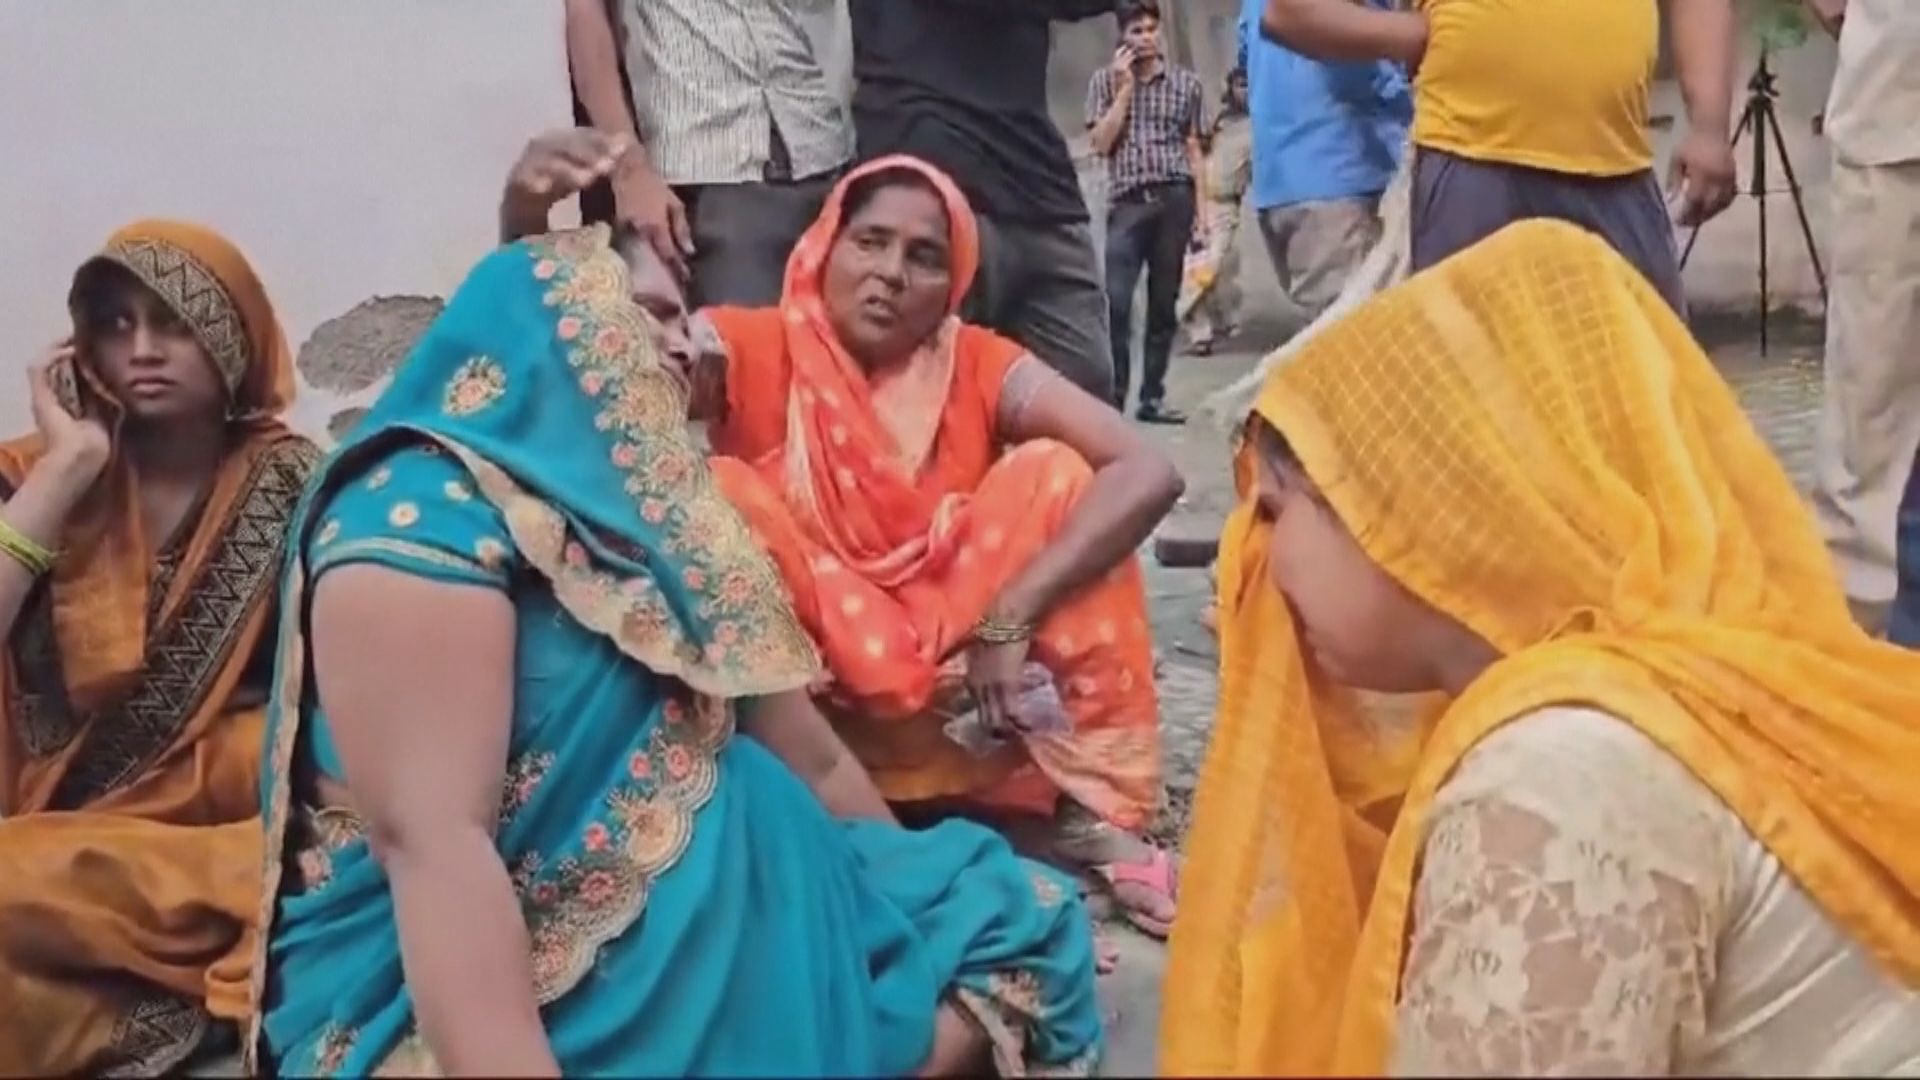 印度逾百人死亡人踩人事件 警拘六男女